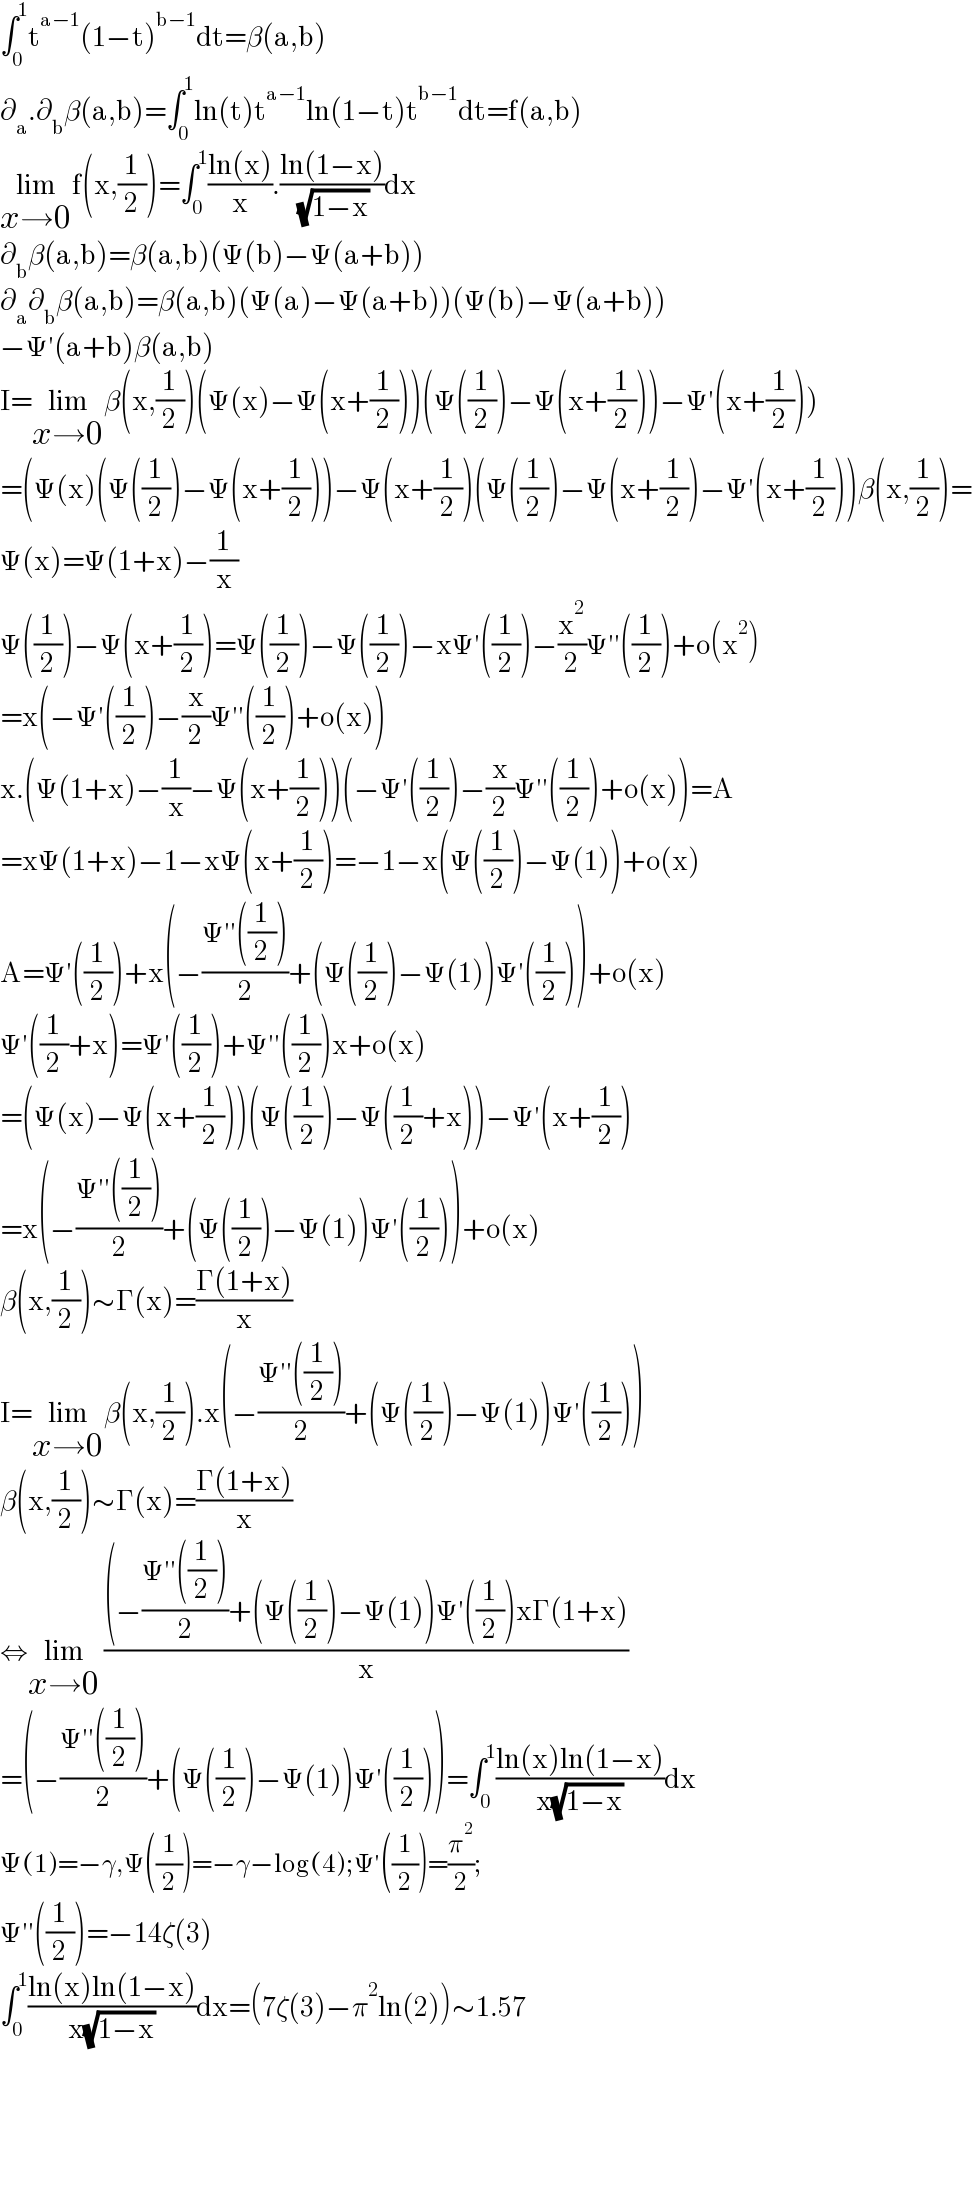 ∫_0 ^1 t^(a−1) (1−t)^(b−1) dt=β(a,b)  ∂_a .∂_b β(a,b)=∫_0 ^1 ln(t)t^(a−1) ln(1−t)t^(b−1) dt=f(a,b)  lim_(x→0) f(x,(1/2))=∫_0 ^1 ((ln(x))/x).((ln(1−x))/( (√(1−x))))dx  ∂_b β(a,b)=β(a,b)(Ψ(b)−Ψ(a+b))  ∂_a ∂_b β(a,b)=β(a,b)(Ψ(a)−Ψ(a+b))(Ψ(b)−Ψ(a+b))  −Ψ′(a+b)β(a,b)  I=lim_(x→0) β(x,(1/2))(Ψ(x)−Ψ(x+(1/2)))(Ψ((1/2))−Ψ(x+(1/2)))−Ψ′(x+(1/2)))  =(Ψ(x)(Ψ((1/2))−Ψ(x+(1/2)))−Ψ(x+(1/2))(Ψ((1/2))−Ψ(x+(1/2))−Ψ′(x+(1/2)))β(x,(1/2))=  Ψ(x)=Ψ(1+x)−(1/x)  Ψ((1/2))−Ψ(x+(1/2))=Ψ((1/2))−Ψ((1/2))−xΨ′((1/2))−(x^2 /2)Ψ′′((1/2))+o(x^2 )  =x(−Ψ′((1/2))−(x/2)Ψ′′((1/2))+o(x))  x.(Ψ(1+x)−(1/x)−Ψ(x+(1/2)))(−Ψ′((1/2))−(x/2)Ψ′′((1/2))+o(x))=A  =xΨ(1+x)−1−xΨ(x+(1/2))=−1−x(Ψ((1/2))−Ψ(1))+o(x)  A=Ψ′((1/2))+x(−((Ψ′′((1/2)))/2)+(Ψ((1/2))−Ψ(1))Ψ′((1/2)))+o(x)  Ψ′((1/2)+x)=Ψ′((1/2))+Ψ′′((1/2))x+o(x)  =(Ψ(x)−Ψ(x+(1/2)))(Ψ((1/2))−Ψ((1/2)+x))−Ψ′(x+(1/2))  =x(−((Ψ′′((1/2)))/2)+(Ψ((1/2))−Ψ(1))Ψ′((1/2)))+o(x)  β(x,(1/2))∼Γ(x)=((Γ(1+x))/x)  I=lim_(x→0) β(x,(1/2)).x(−((Ψ′′((1/2)))/2)+(Ψ((1/2))−Ψ(1))Ψ′((1/2)))  β(x,(1/2))∼Γ(x)=((Γ(1+x))/x)  ⇔lim_(x→0)  (((−((Ψ′′((1/2)))/2)+(Ψ((1/2))−Ψ(1))Ψ′((1/2))xΓ(1+x))/x)  =(−((Ψ′′((1/2)))/2)+(Ψ((1/2))−Ψ(1))Ψ′((1/2)))=∫_0 ^1 ((ln(x)ln(1−x))/(x(√(1−x))))dx  Ψ(1)=−γ,Ψ((1/2))=−γ−log(4);Ψ′((1/2))=(π^2 /2);  Ψ′′((1/2))=−14ζ(3)  ∫_0 ^1 ((ln(x)ln(1−x))/(x(√(1−x))))dx=(7ζ(3)−π^2 ln(2))∼1.57        